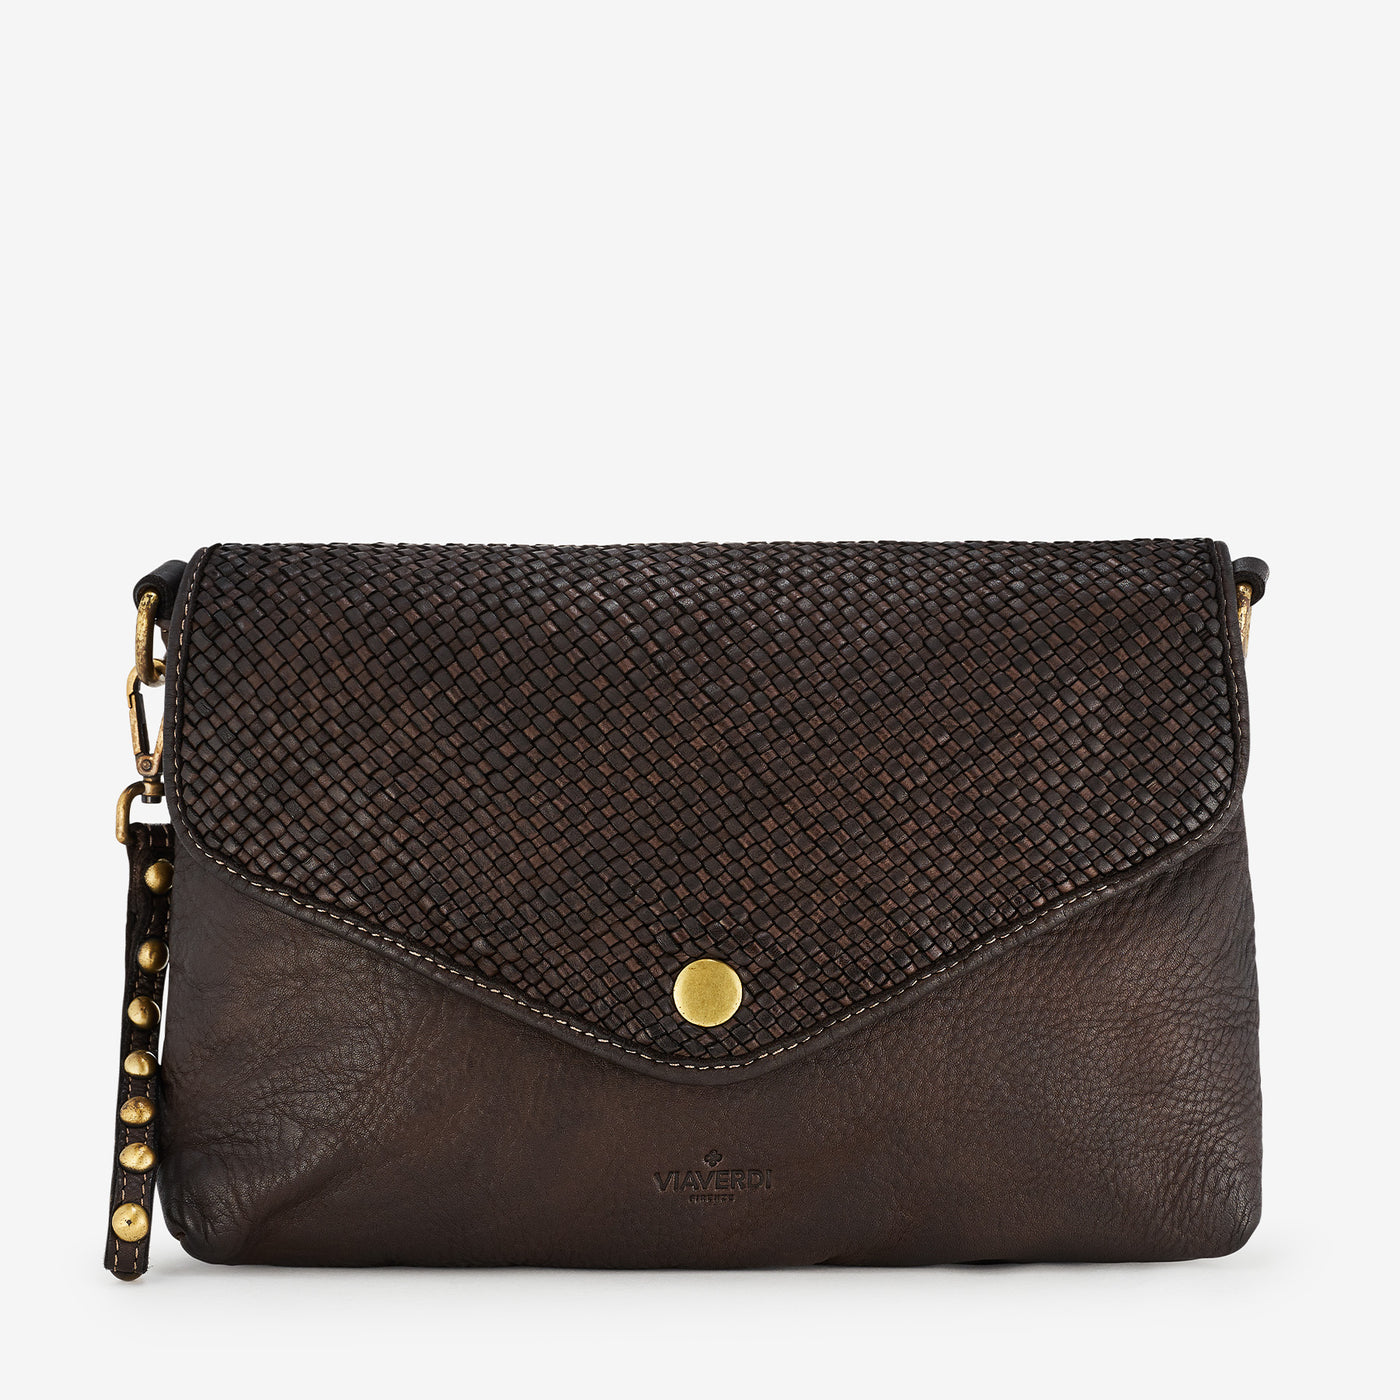 VIAVERDI Dark Brown Intrecciato Leather Pouch Bag Made in Italy 